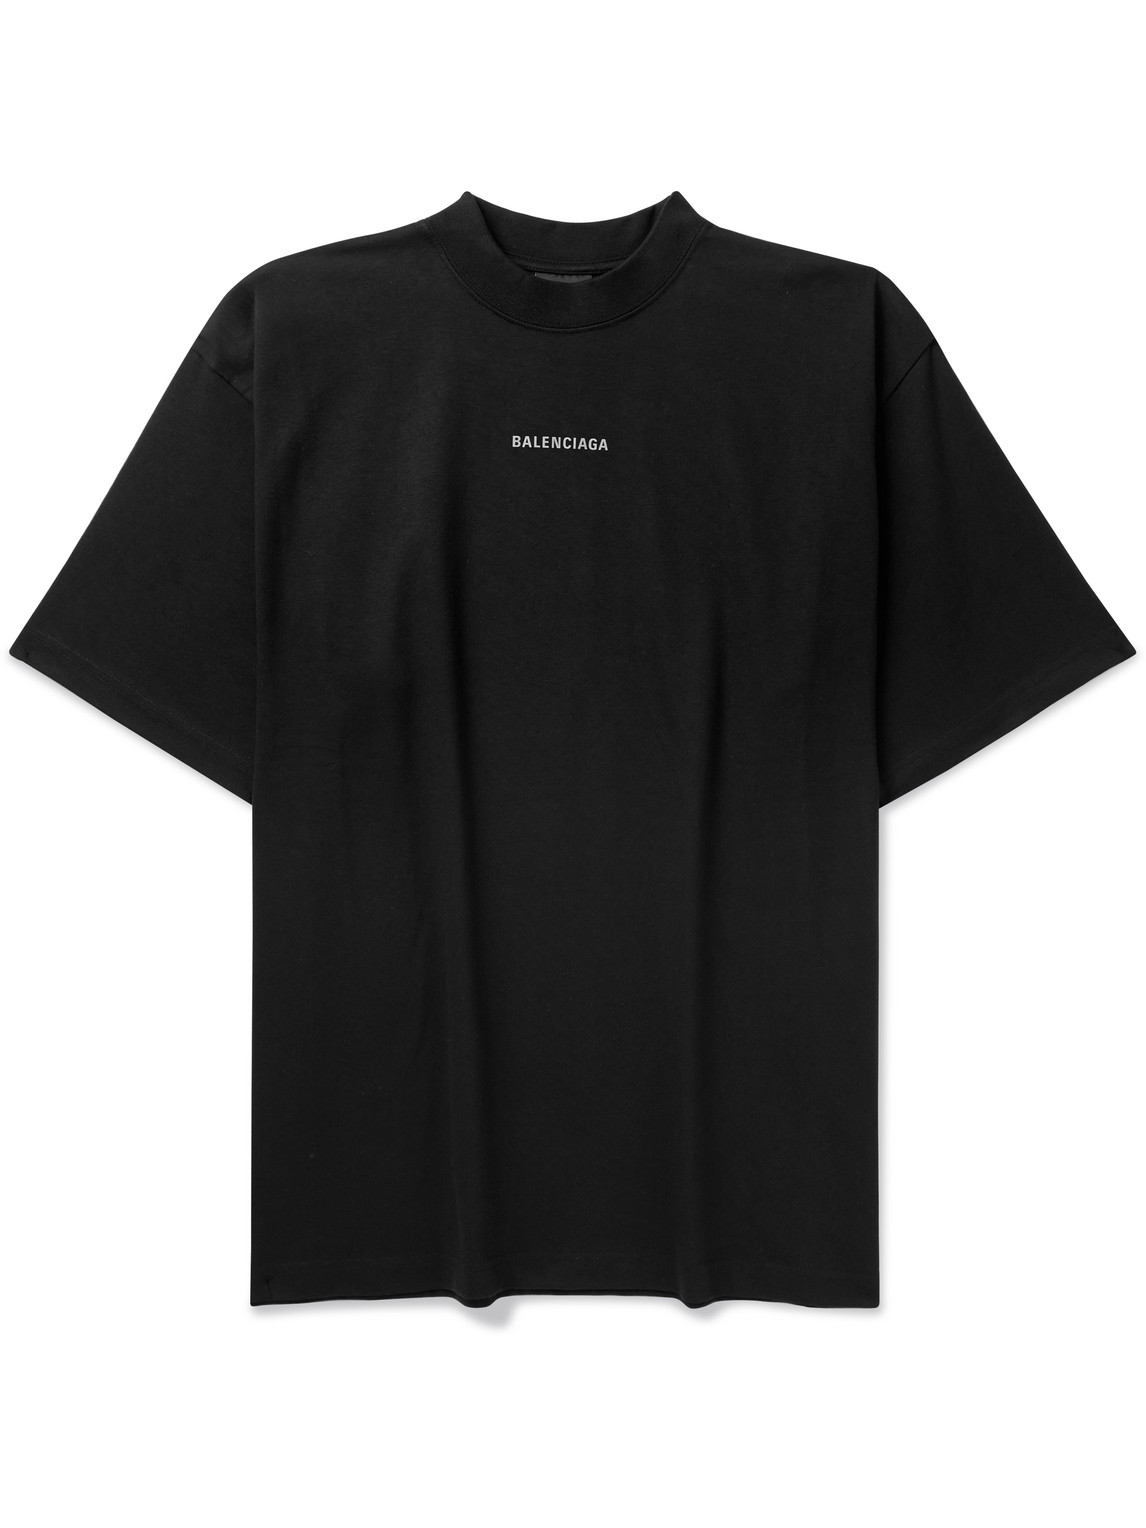 Balenciaga - Logo-Print Cotton-Jersey T-Shirt - Men - Black - L von Balenciaga